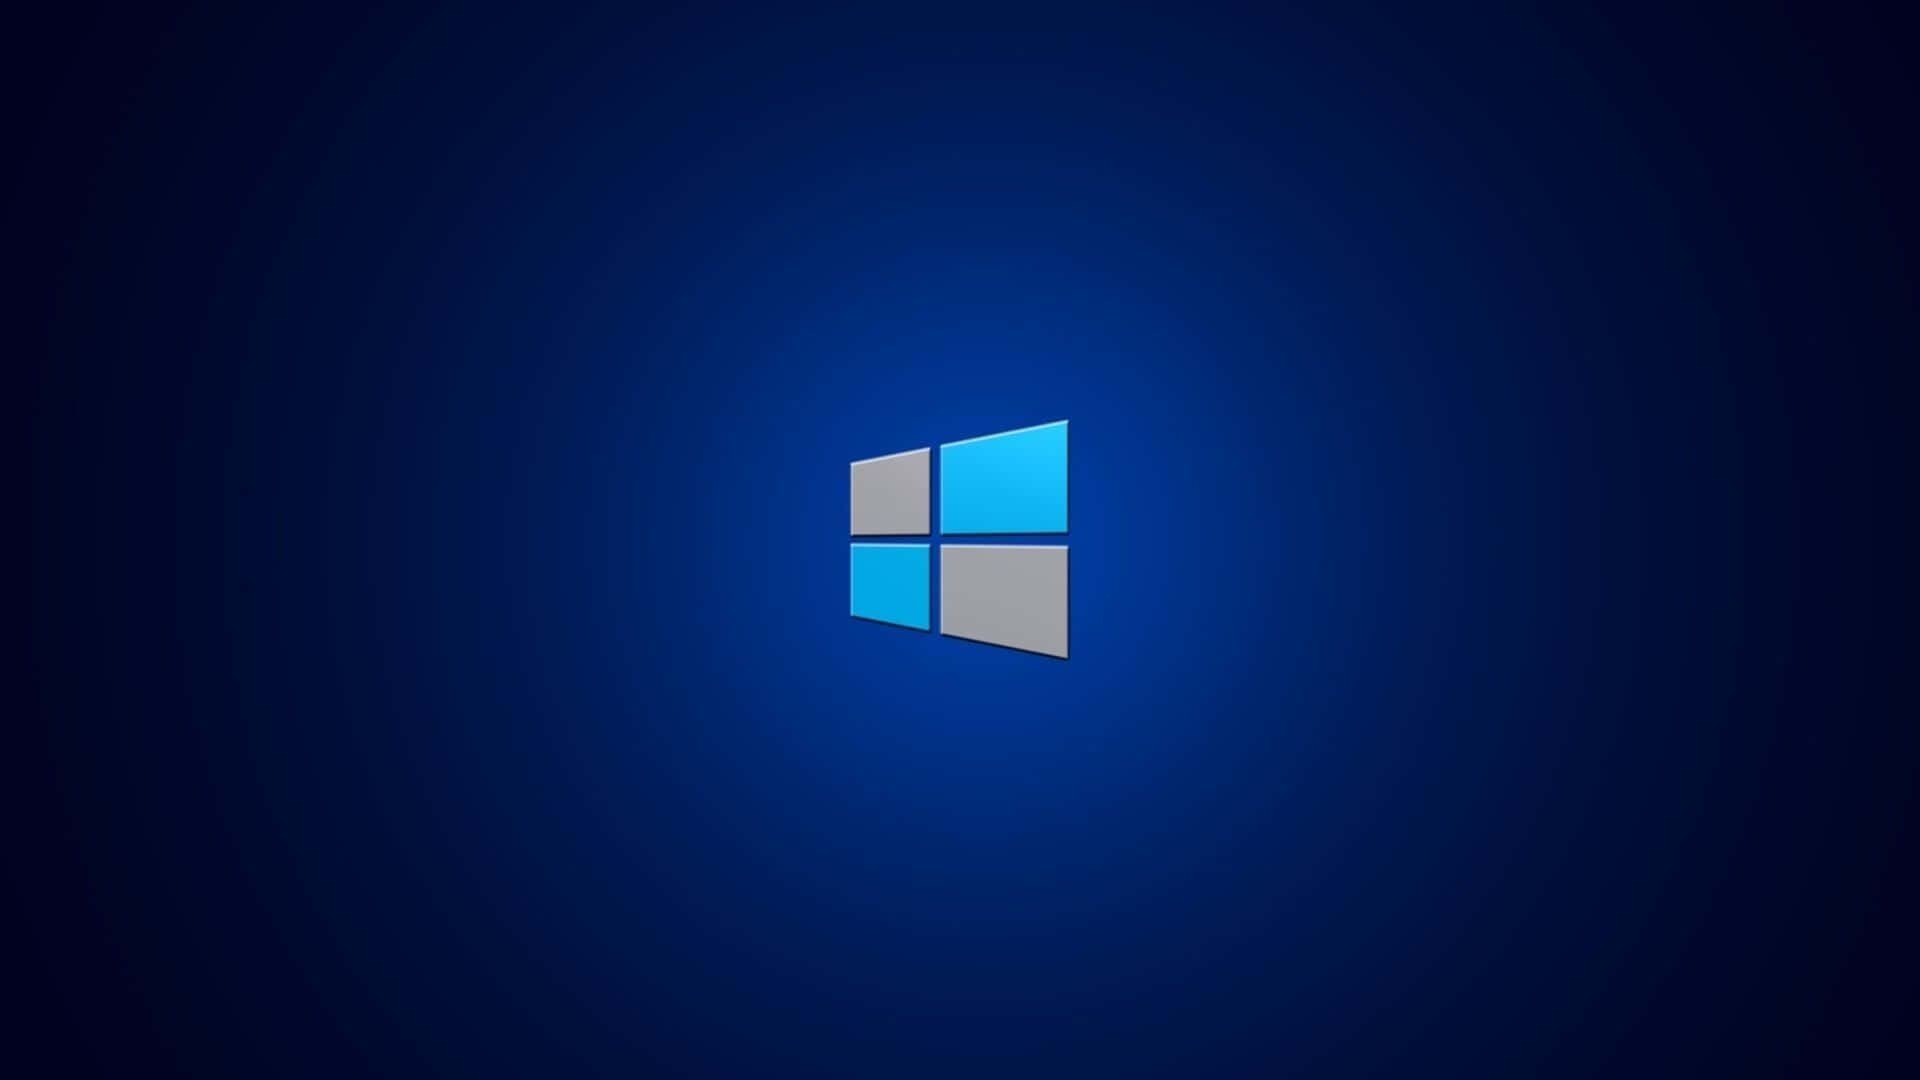 Windows Logo On A Dark Background Wallpaper